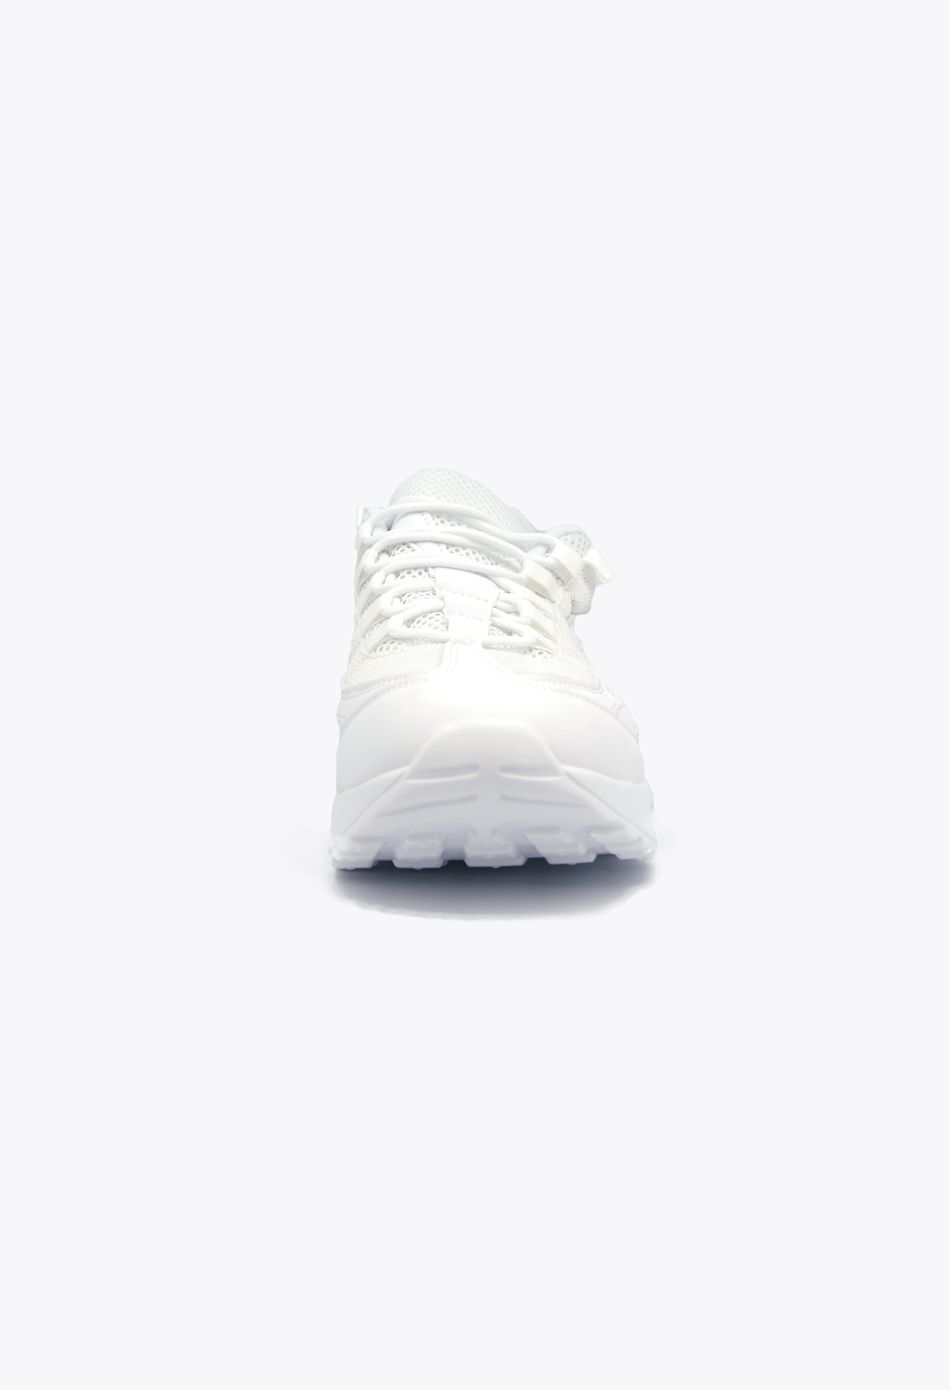 Ανδρικά Αθλητικά Παπούτσια για Τρέξιμο με αεροσόλα Λευκό / M-95-white ΑΘΛΗΤΙΚΑ & SNEAKERS joya.gr